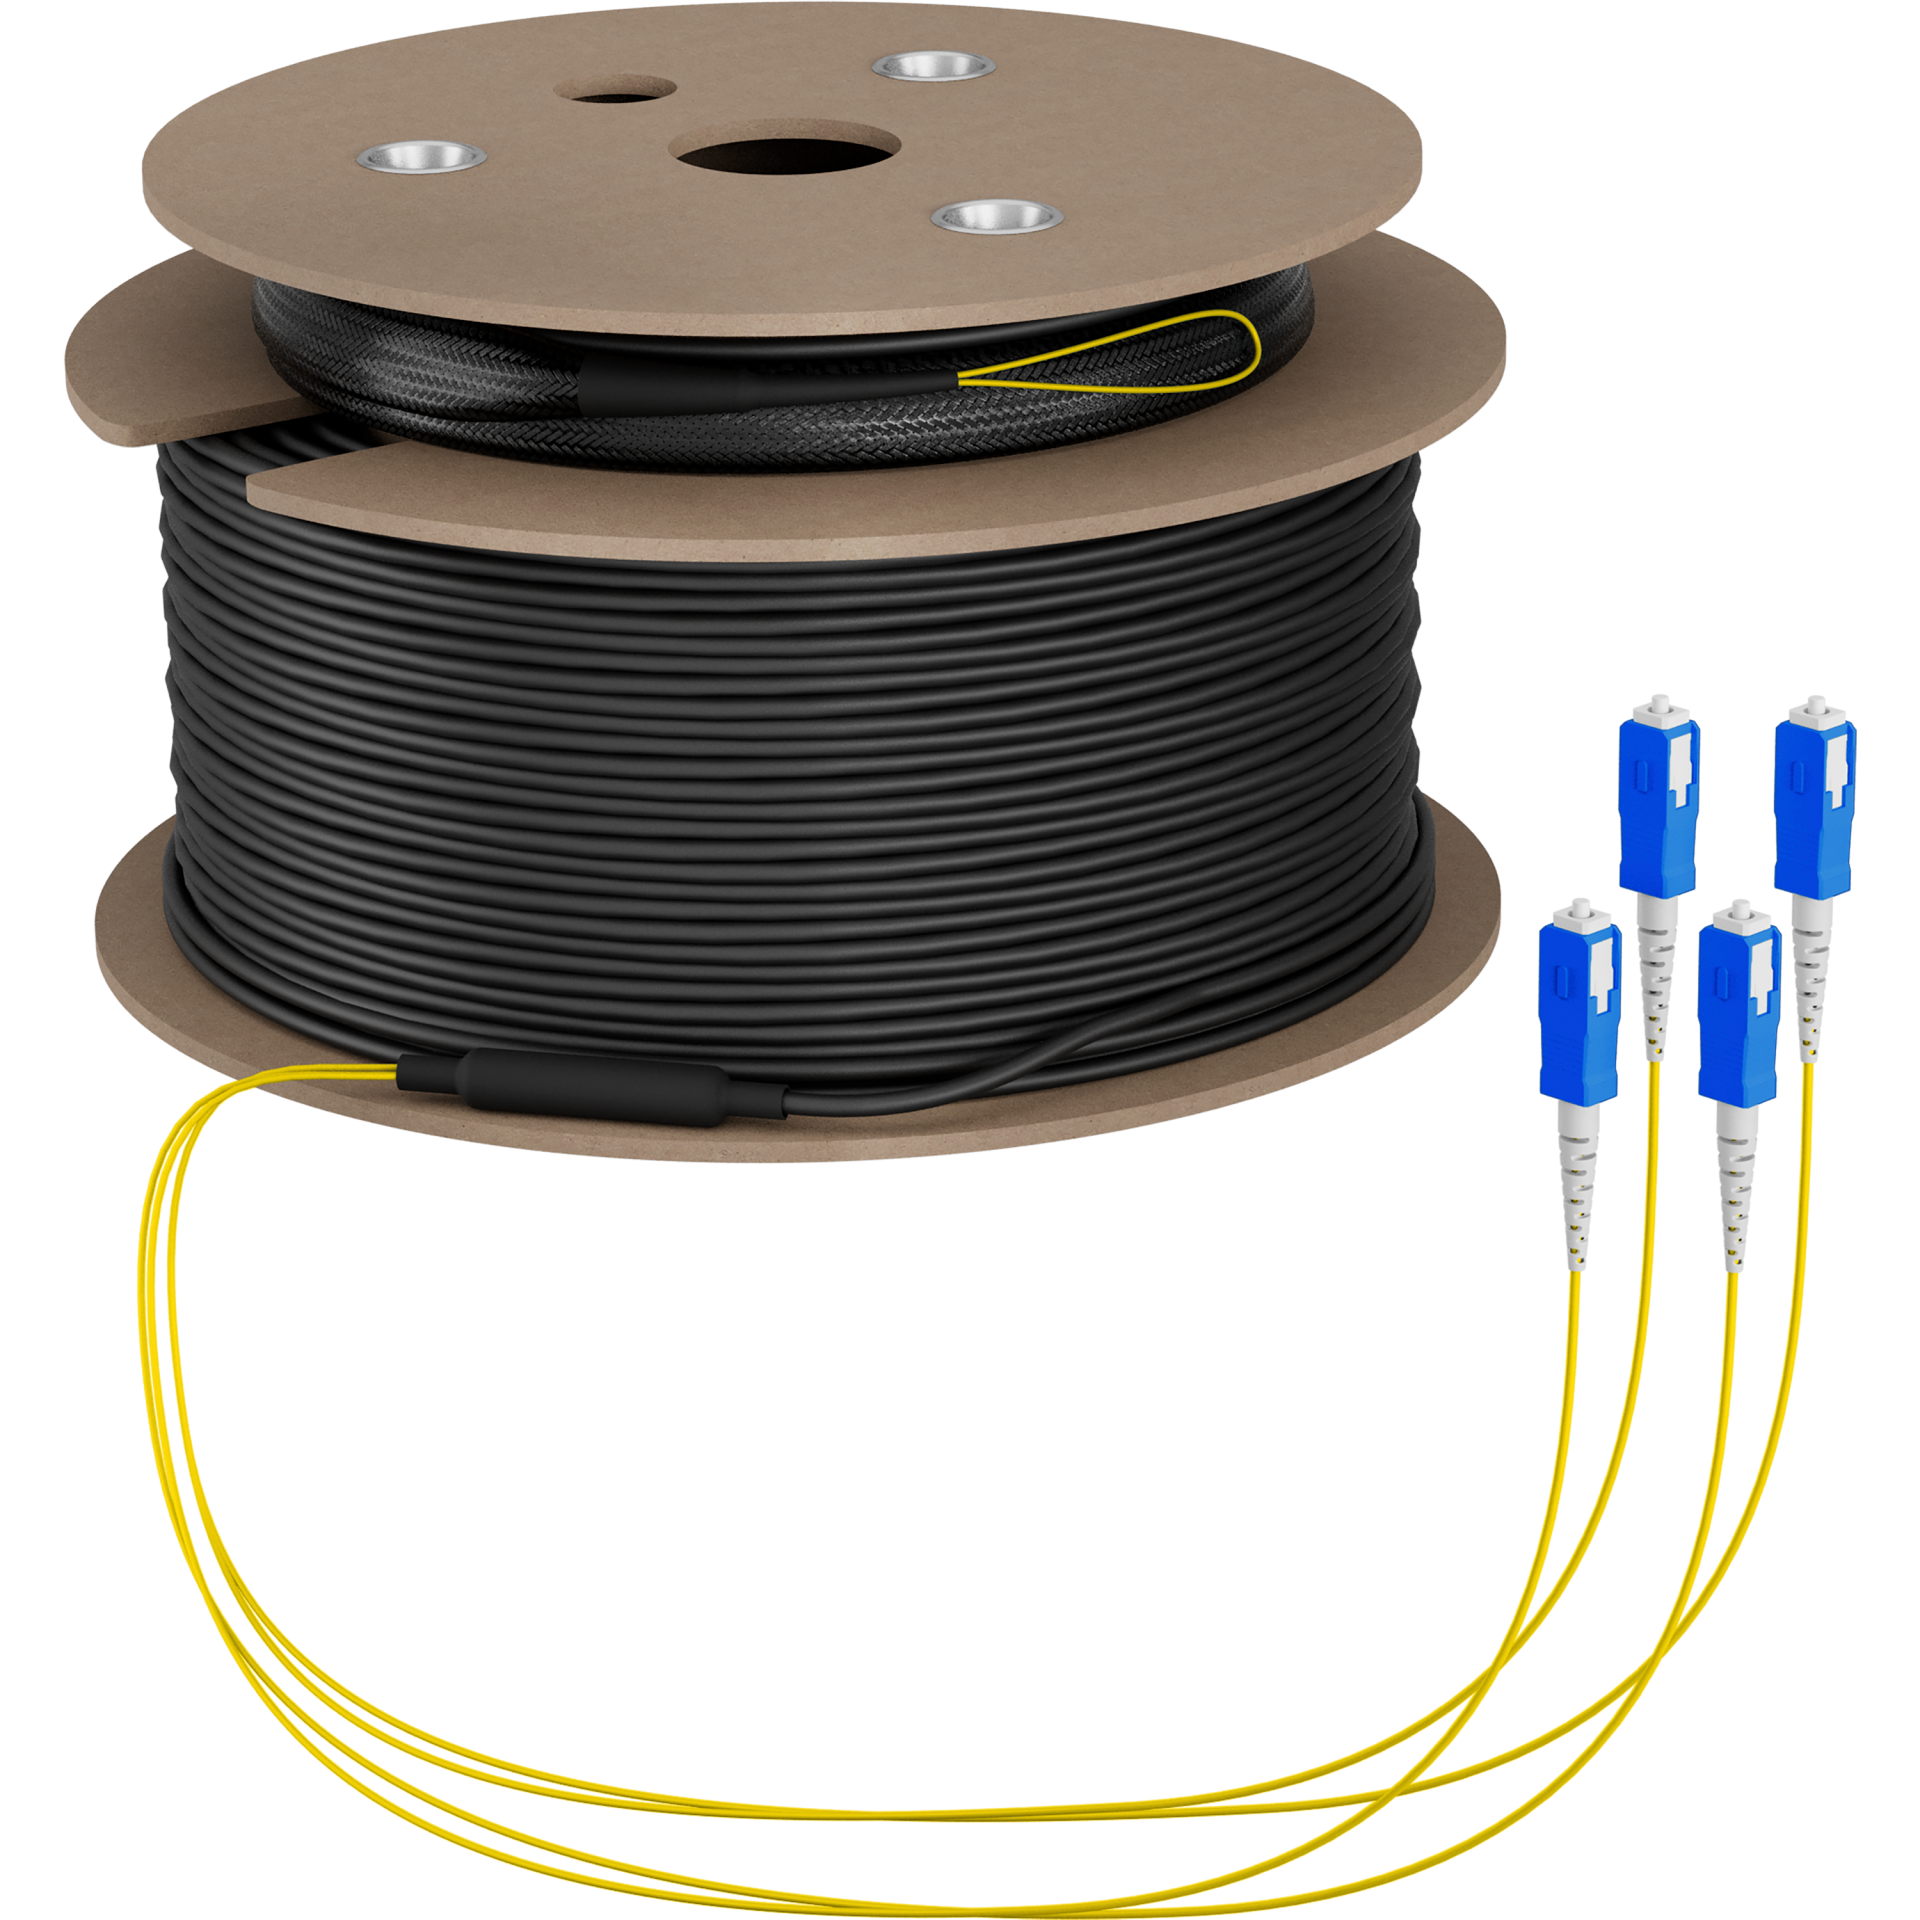 Trunk cable U-DQ(ZN)BH OS2 4E (1x4) SC-SC,190m Dca LSZH